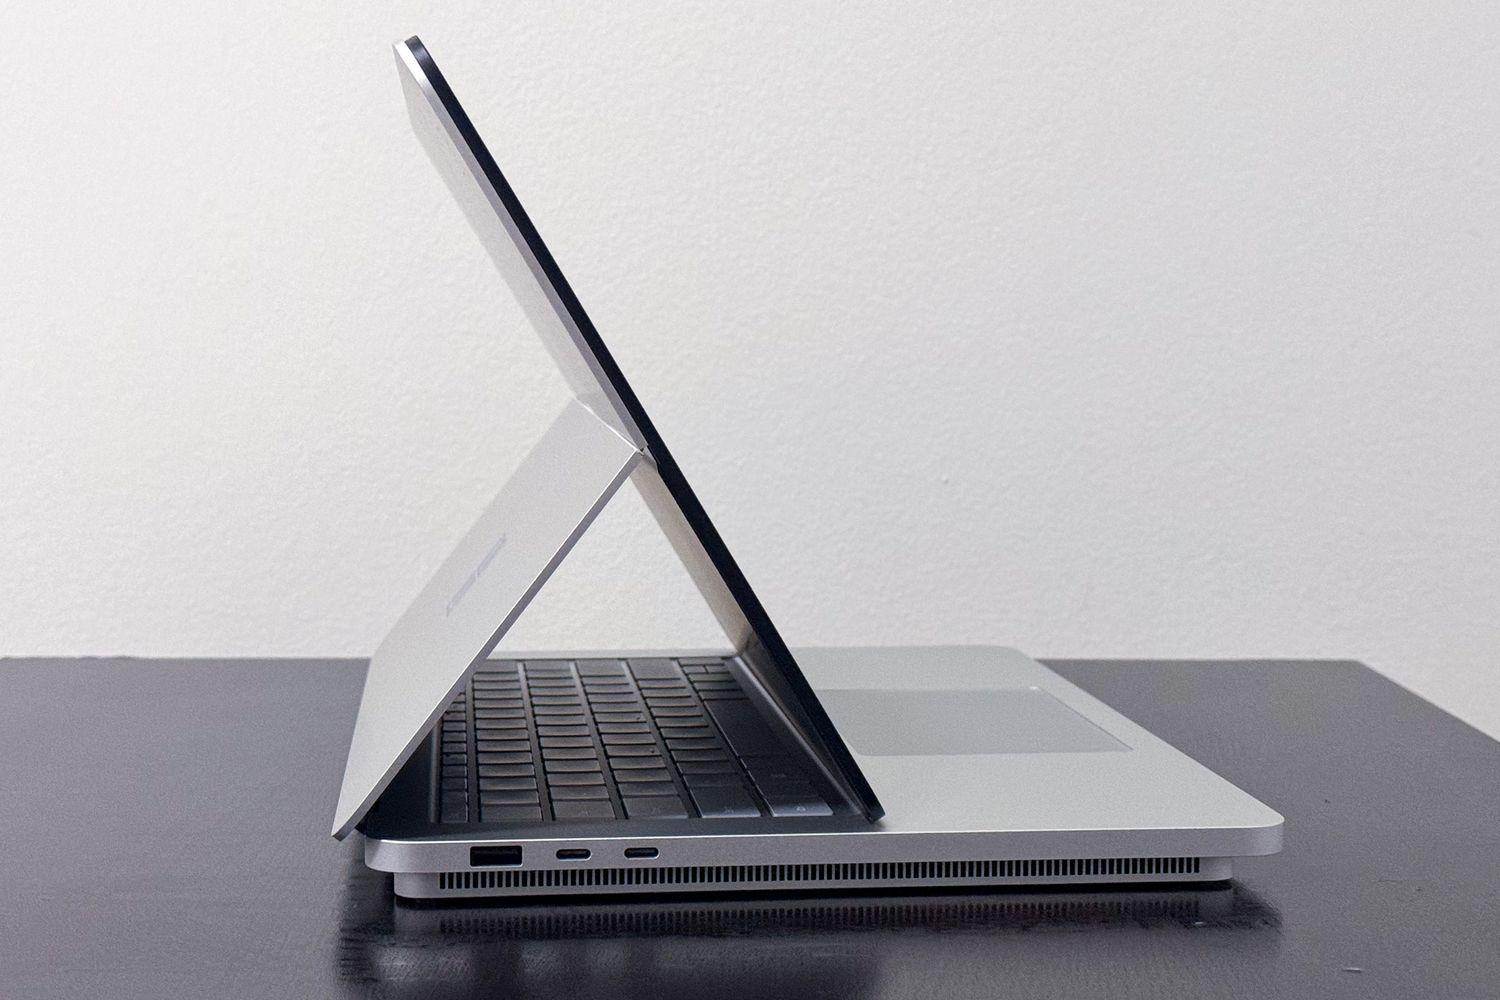 Microsoft Surface Laptop Studio 2 ở chế độ gấp hình chiếc lều (Ảnh: Internet)